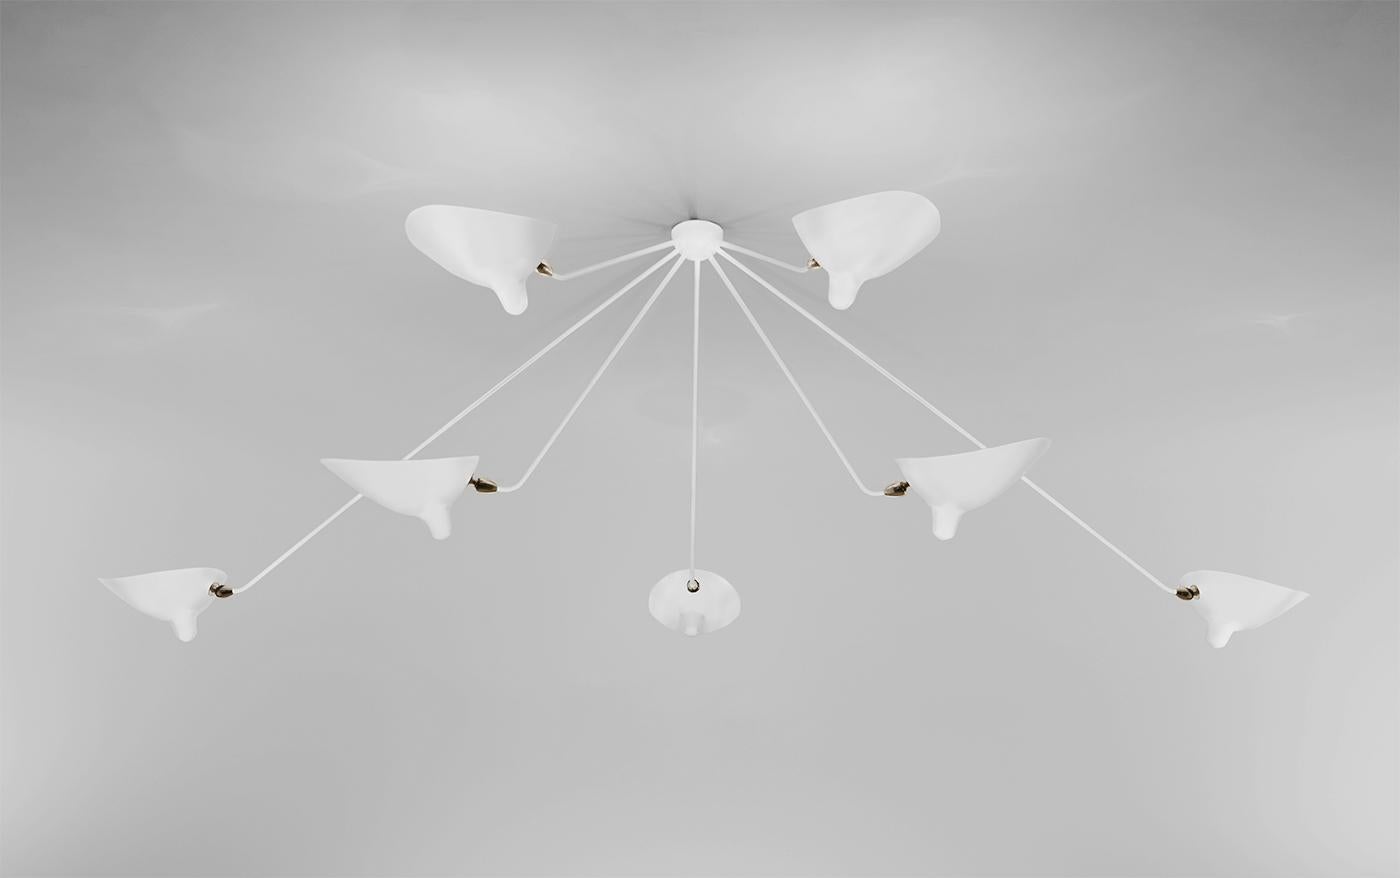 Wandleuchte für die Decke, Modell 'seven fixed arms spider ceiling lamp', entworfen von Serge Mouille im Jahr 1953.

Hergestellt von Editions Serge Mouille in Frankreich. Die Herstellung der Lampen, Wandleuchten und Stehlampen erfolgt in